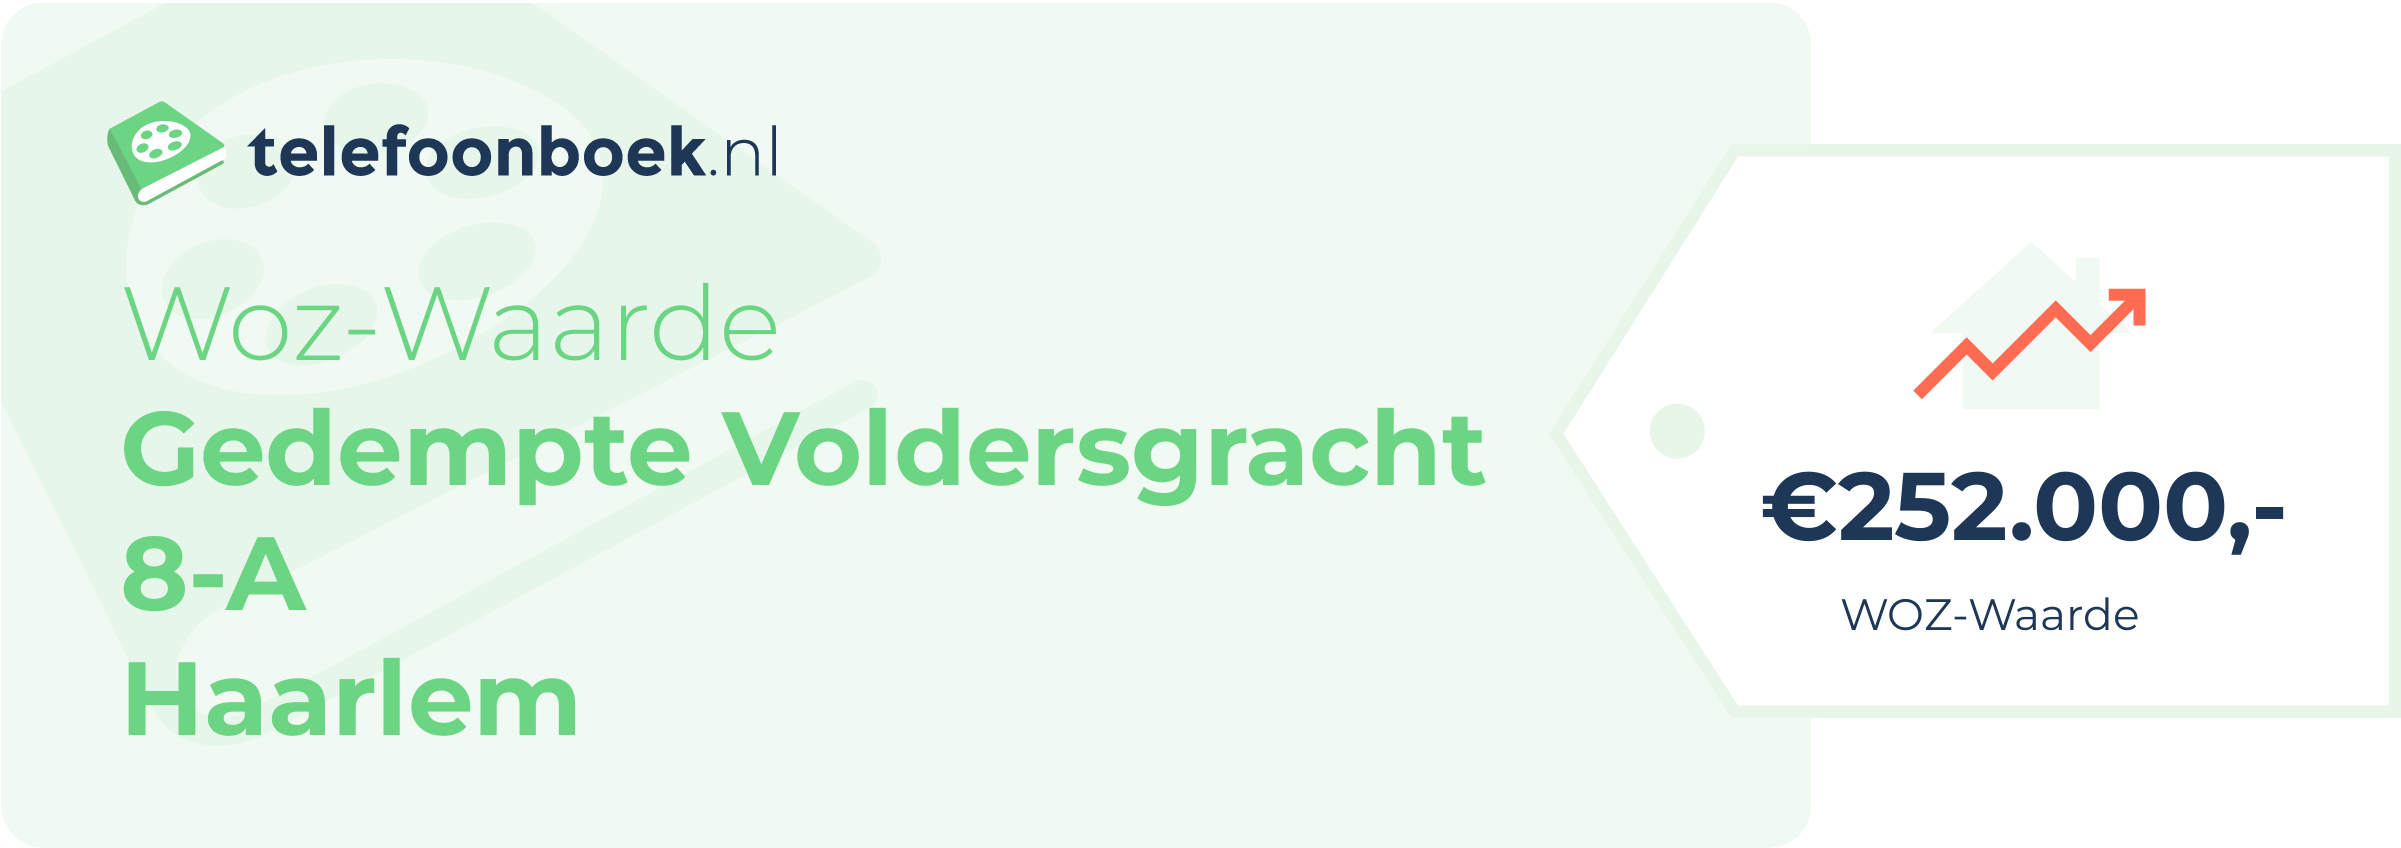 WOZ-waarde Gedempte Voldersgracht 8-A Haarlem